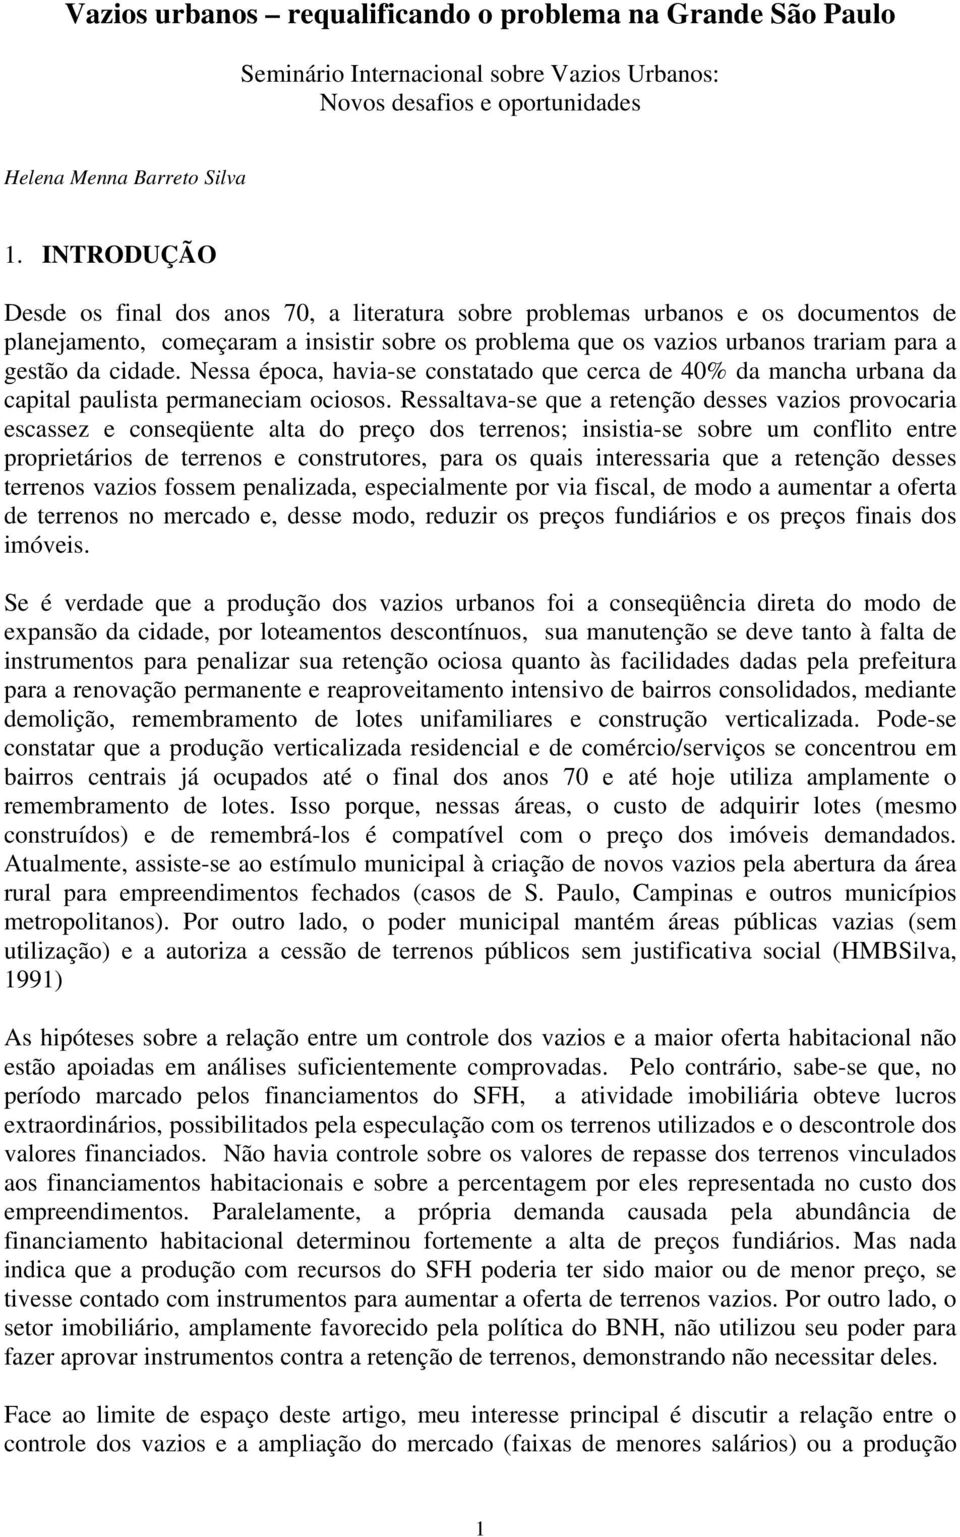 cidade. Nessa época, havia-se constatado que cerca de 40% da mancha urbana da capital paulista permaneciam ociosos.